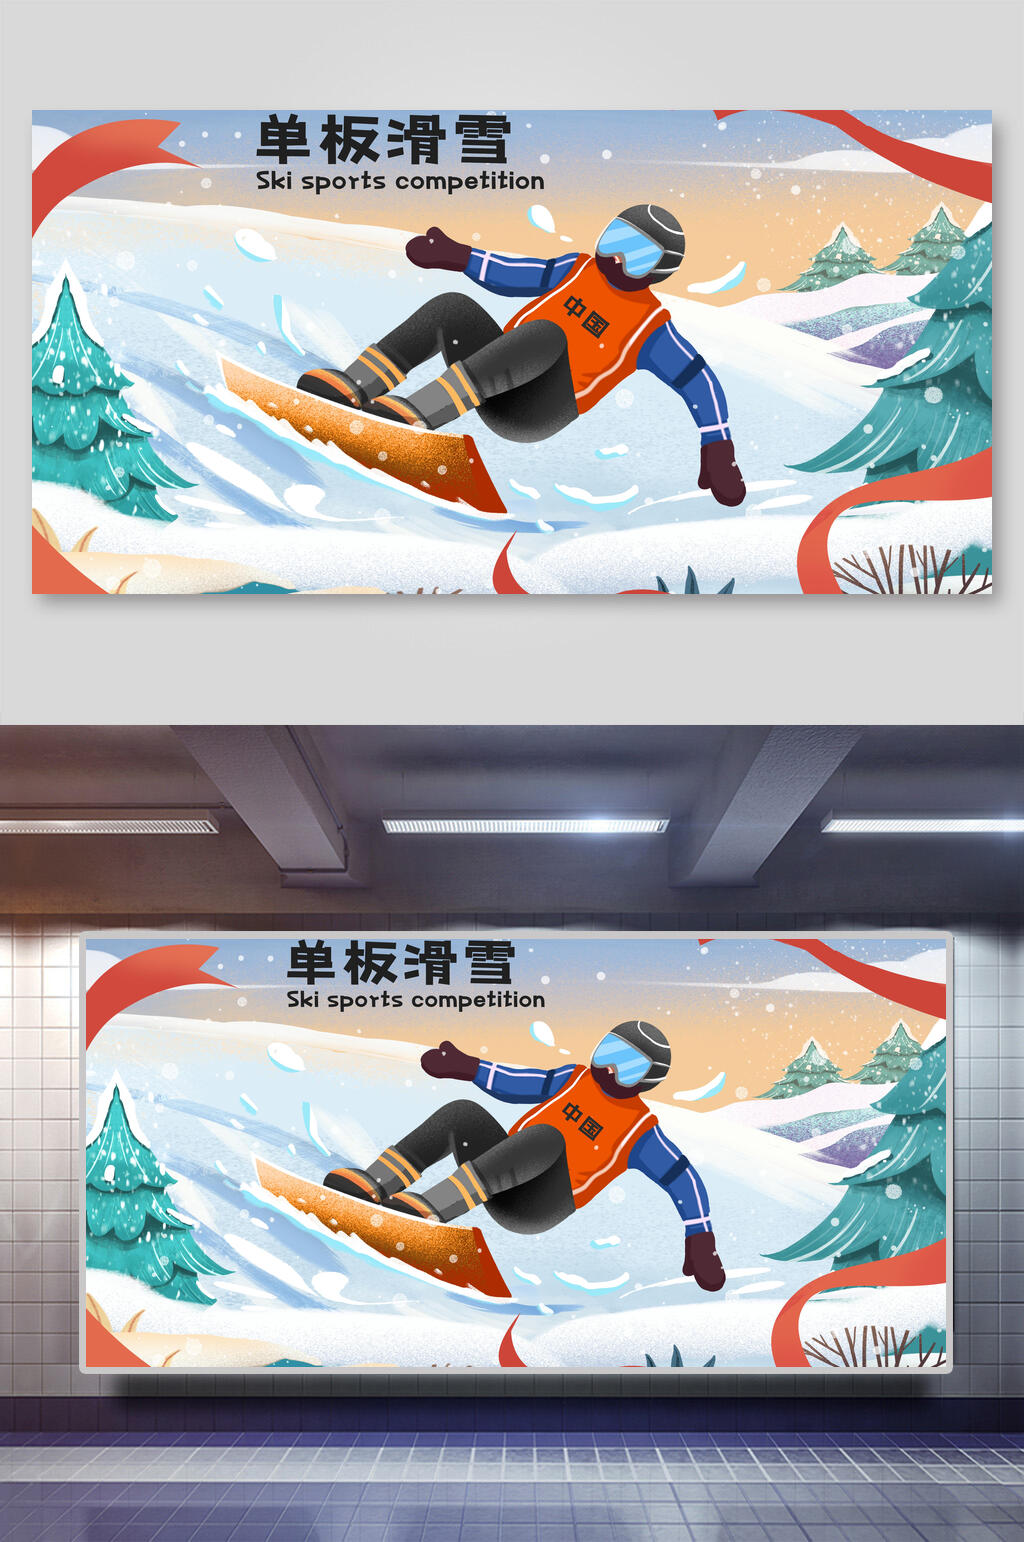 冬奥会单板滑雪插画